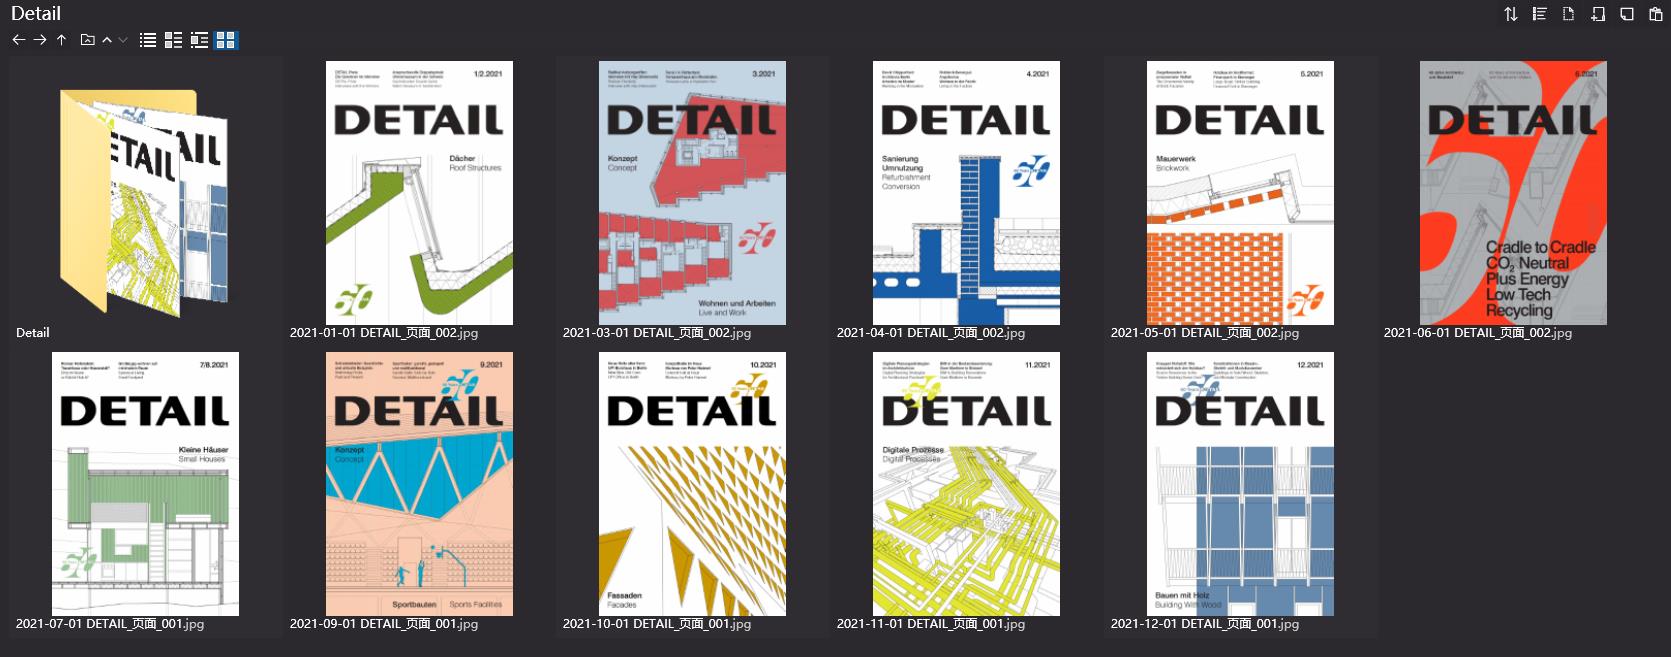 建築雜誌DETAIL,建築細部、工藝雜誌DETAIL,建築設計雜誌,DETAIL設計雜誌,DETAIL設計電子雜誌,雜誌下載,DETAIL雜誌合集